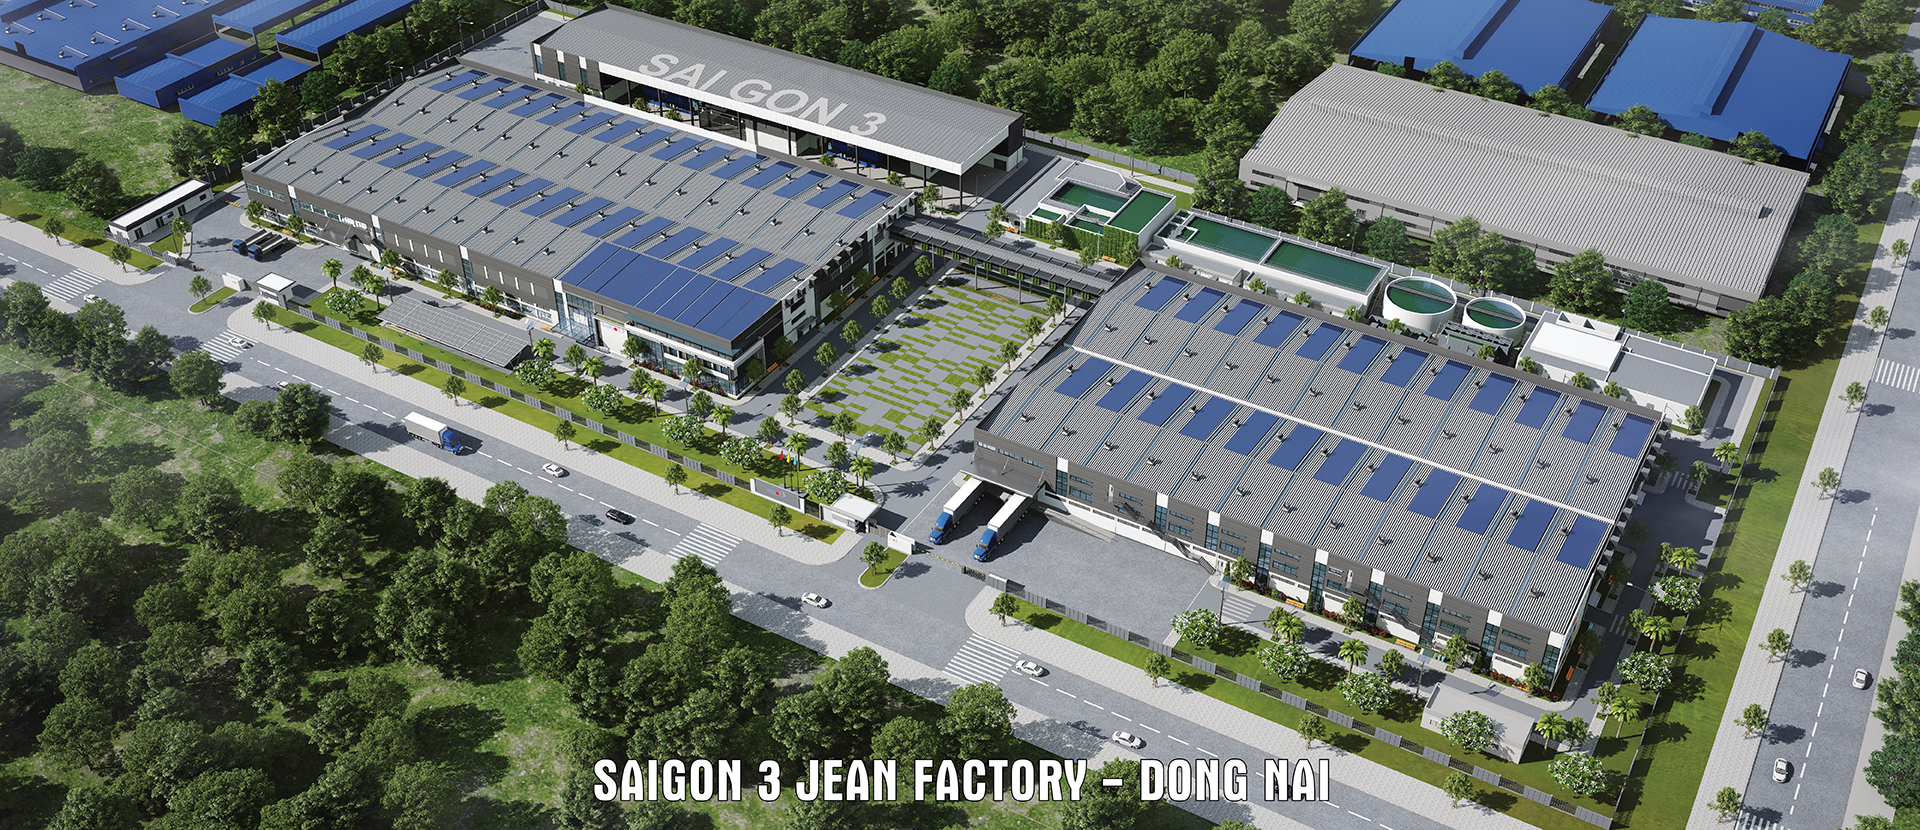 Saigon 3 Jean